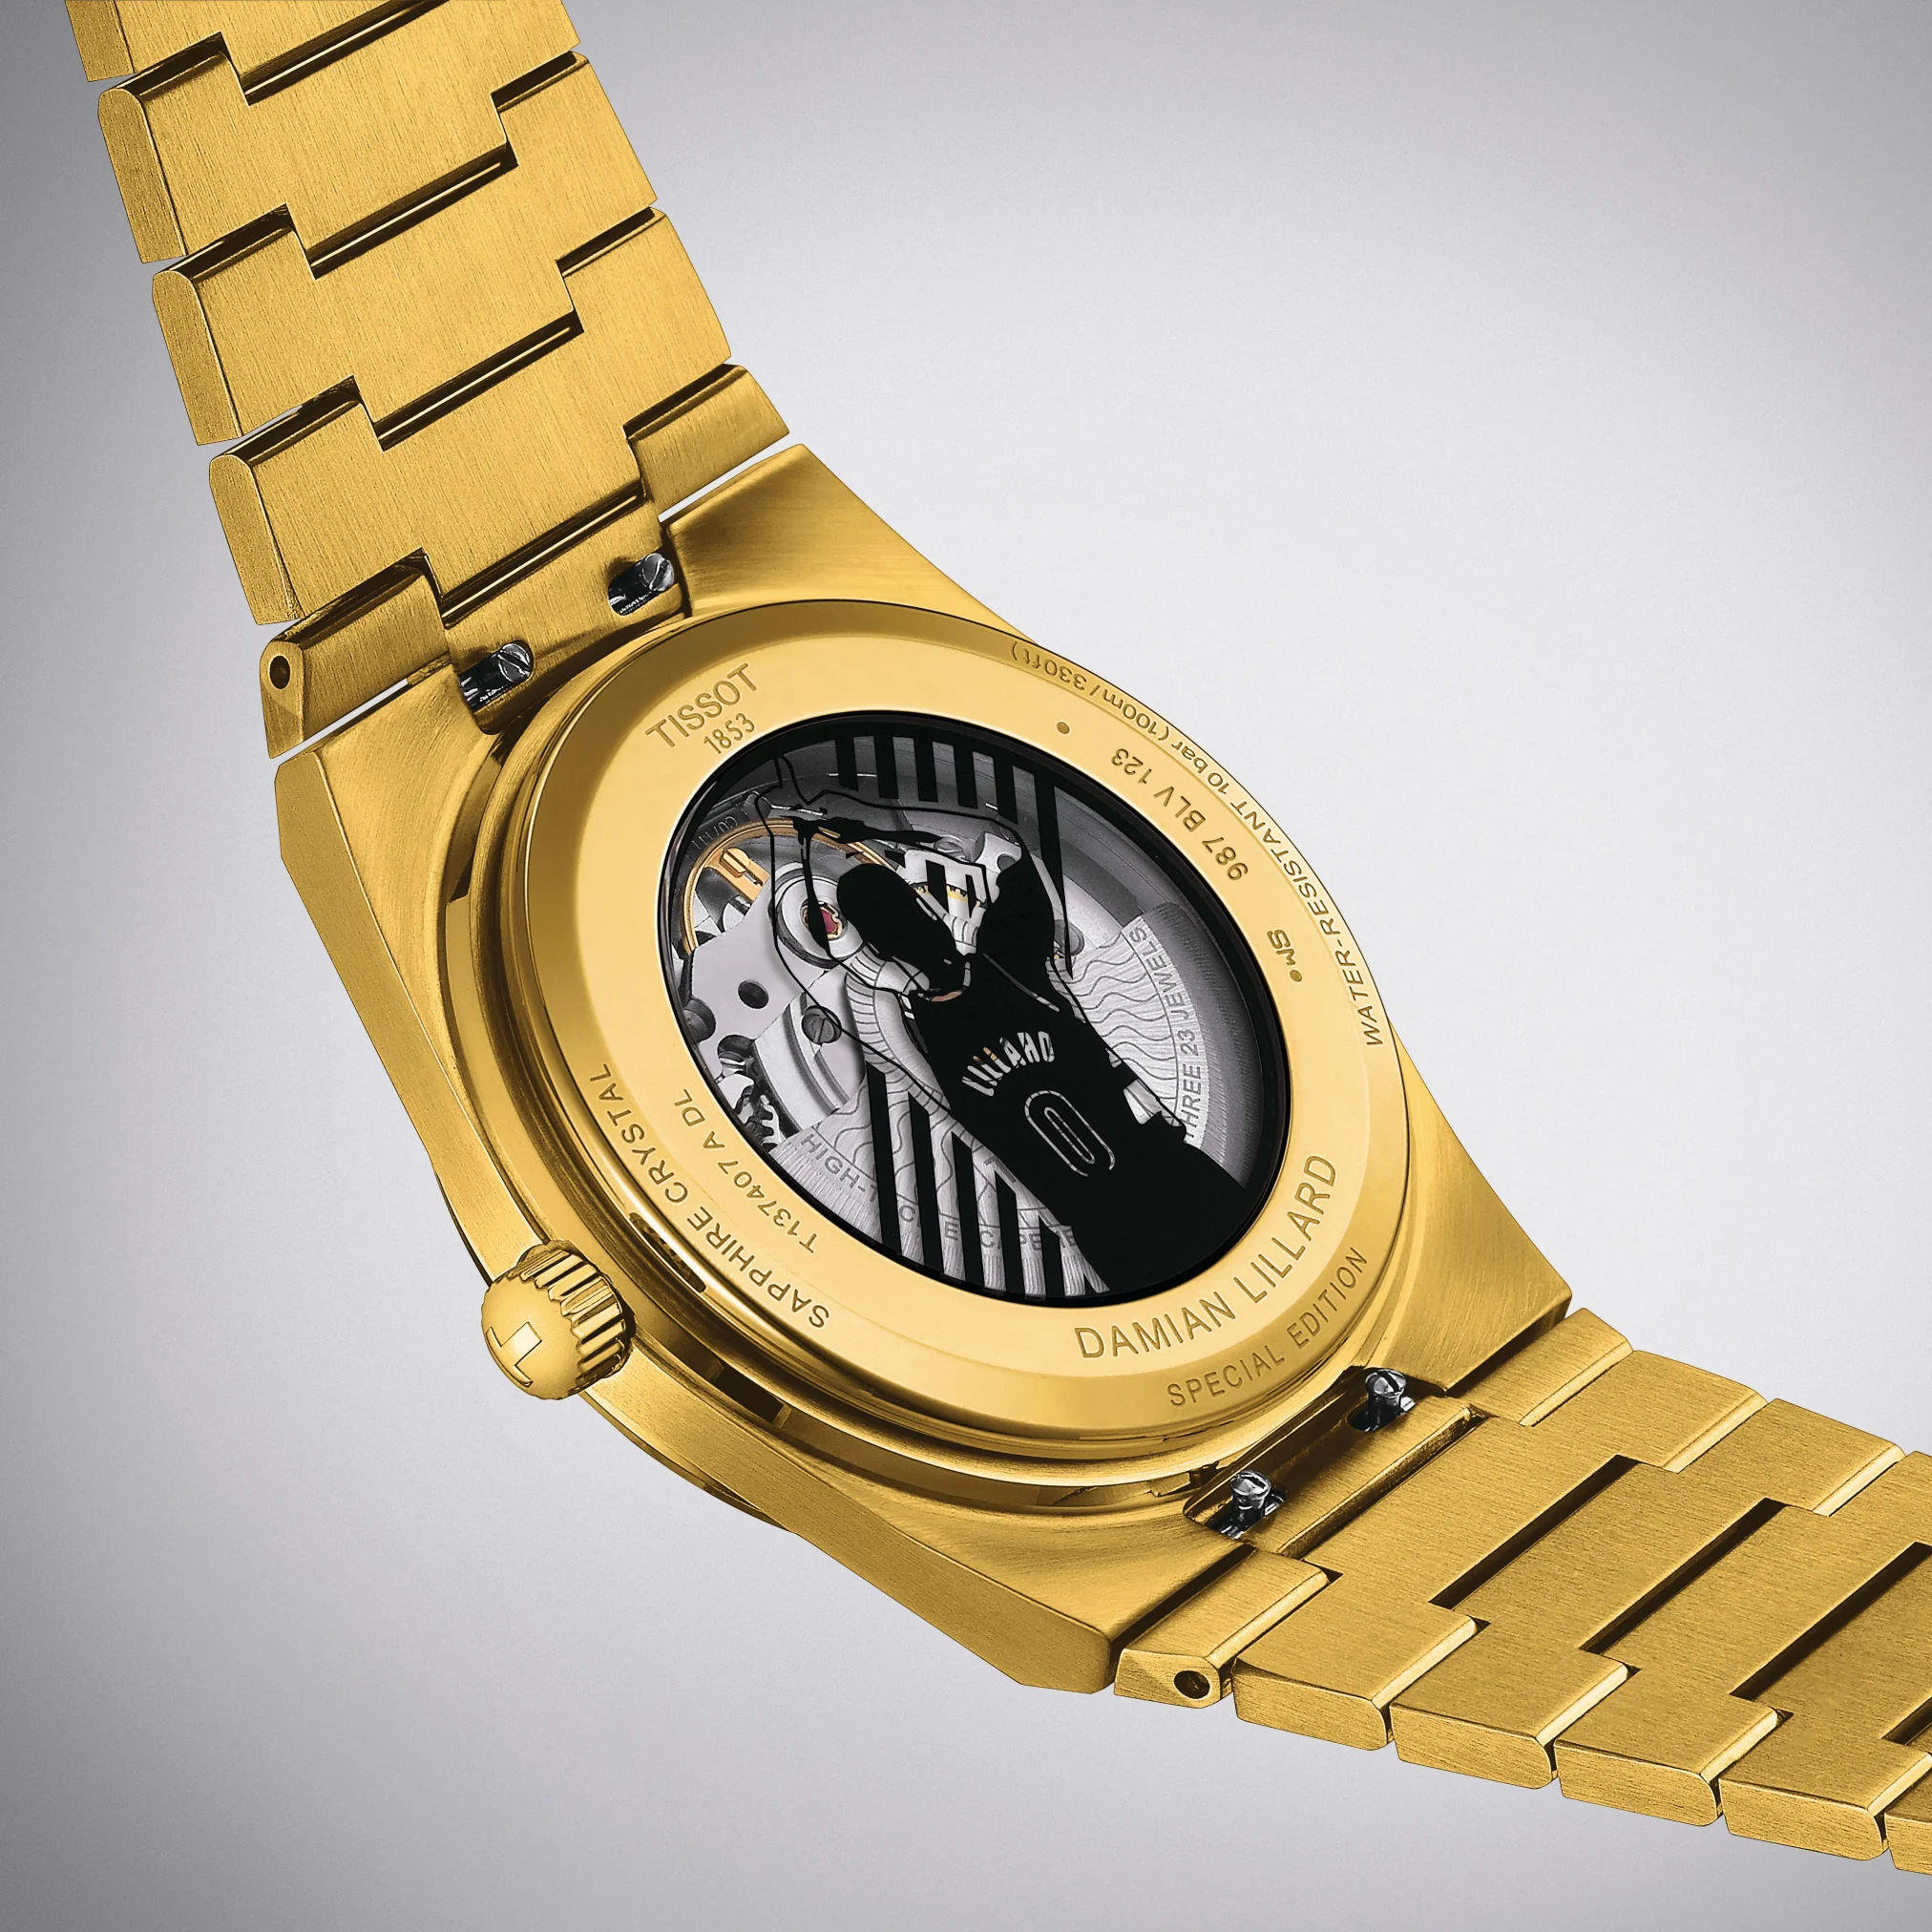 Đồng hồ Tissot PRX Powermatic 80 Damian Lillard Special Editon T137.407.33.051.00 mặt số màu đen. Dây đeo bằng thép. Thân vỏ bằng thép.